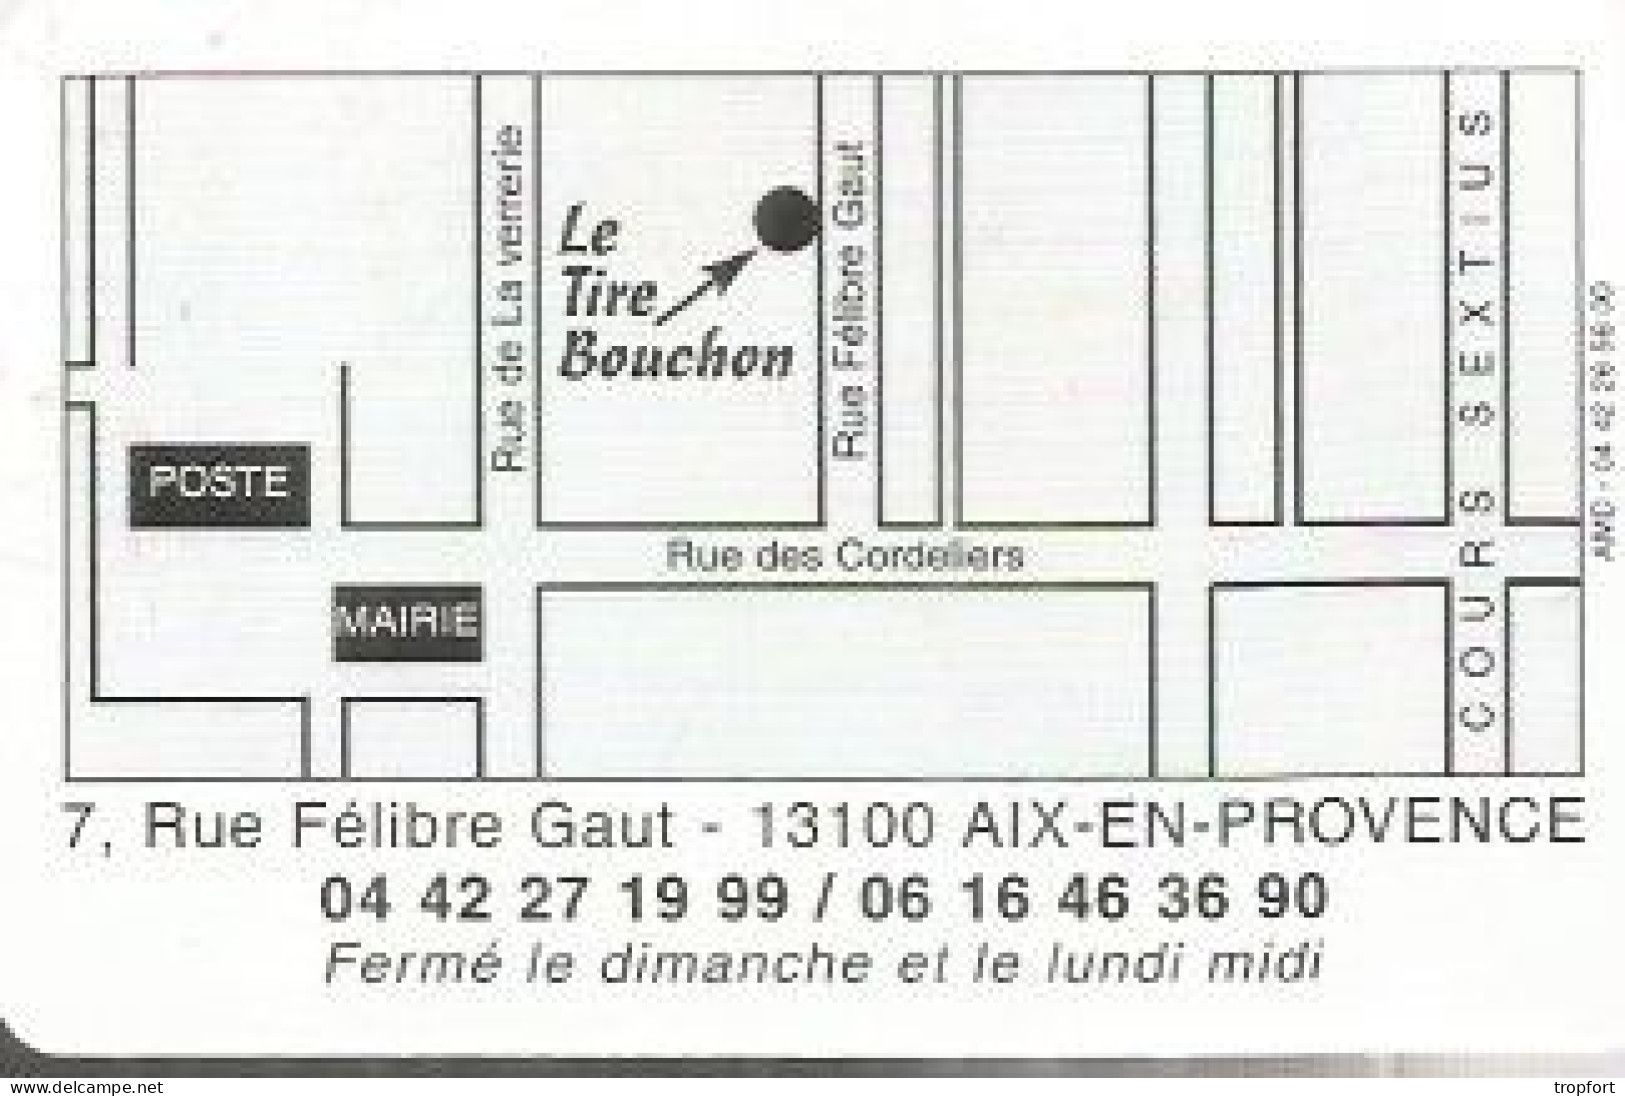 Carte De Visite Restaurant Le Tire Bouchon  13 AIX EN PROVENCE  TIRE BOUCHON - Visitenkarten